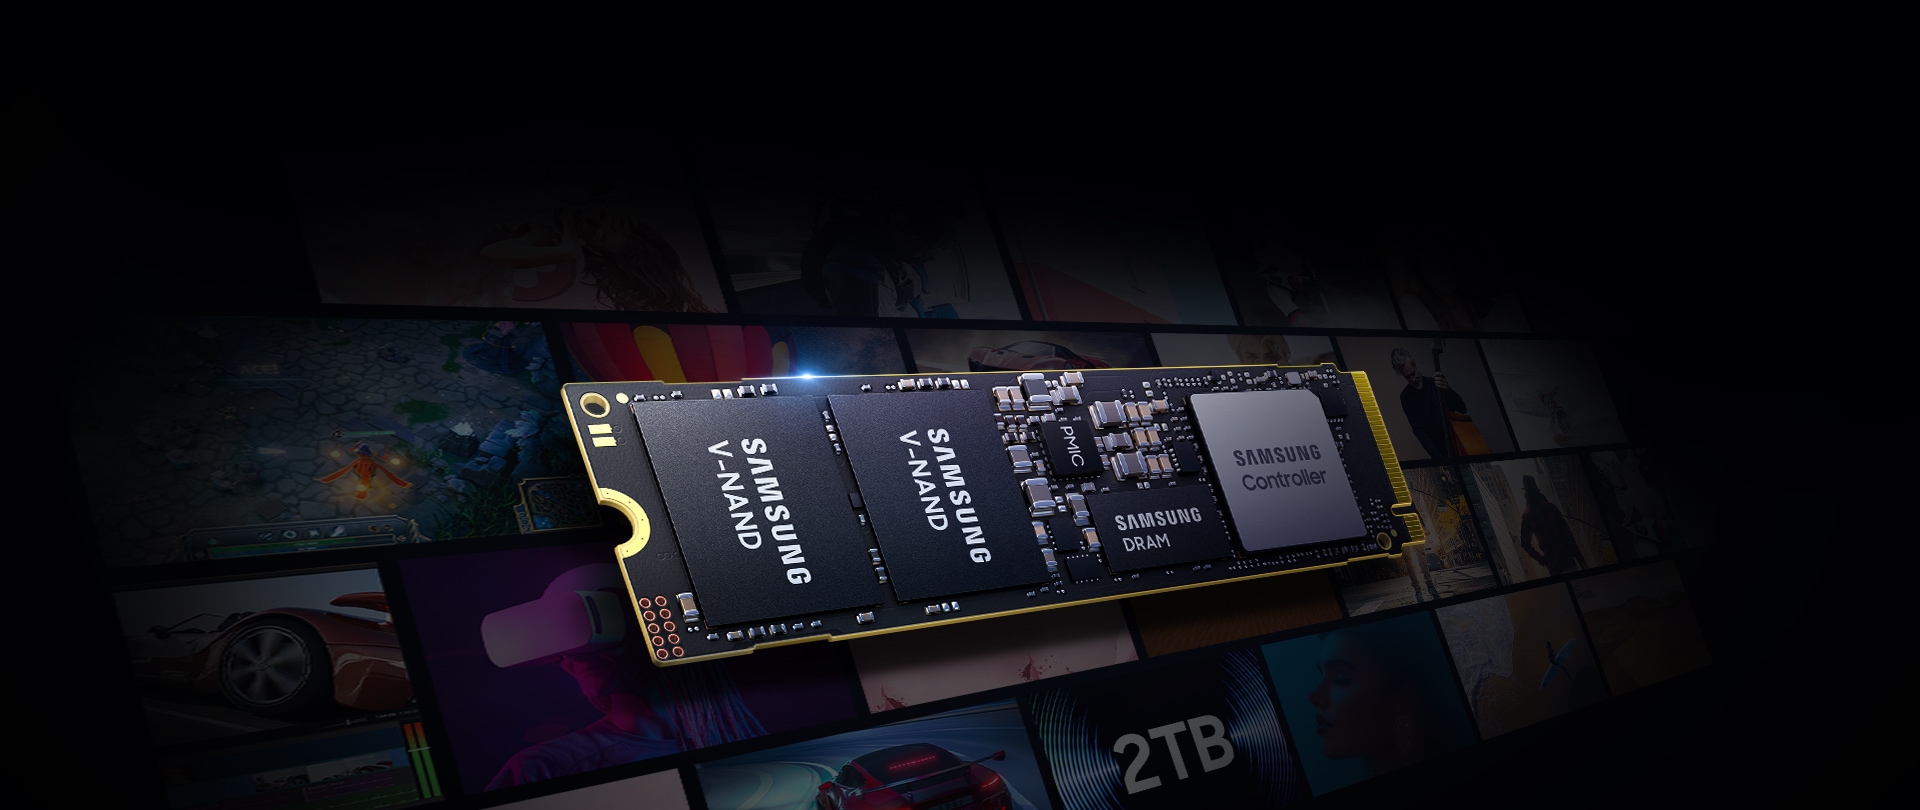 다양한 애플리케이션과 미디어에 적합한 대용량을 강조하는 2TB 삼성 SSD